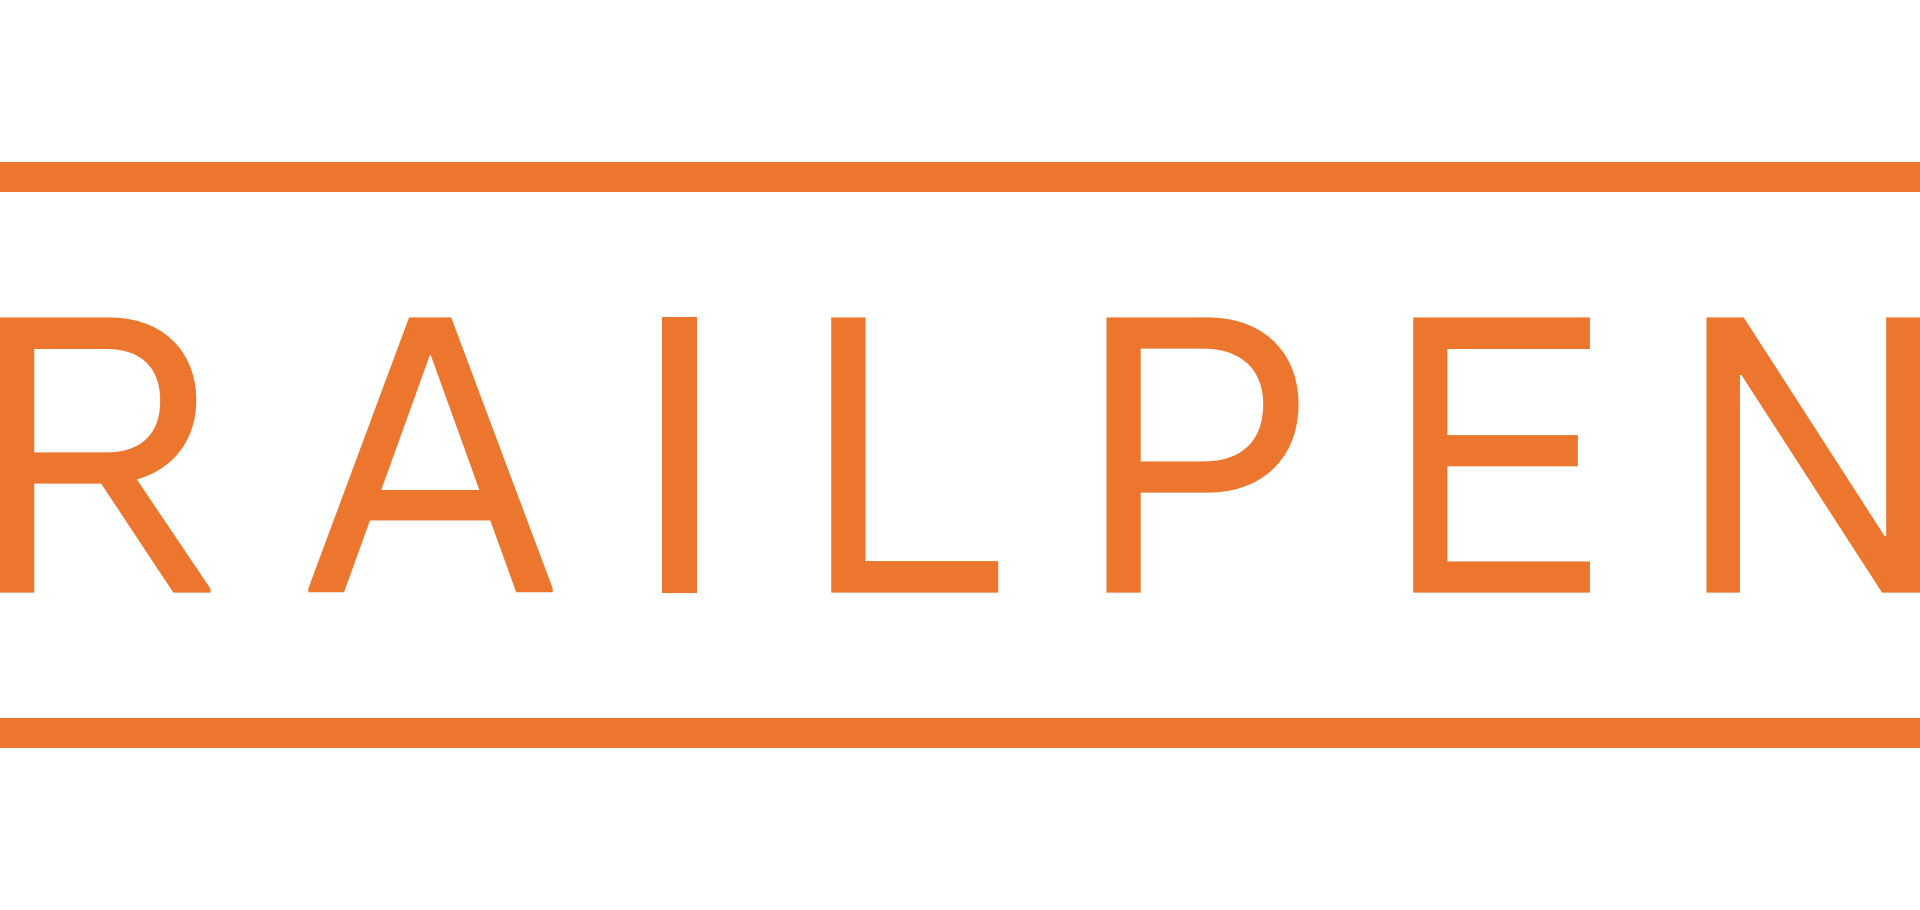 Railren logo